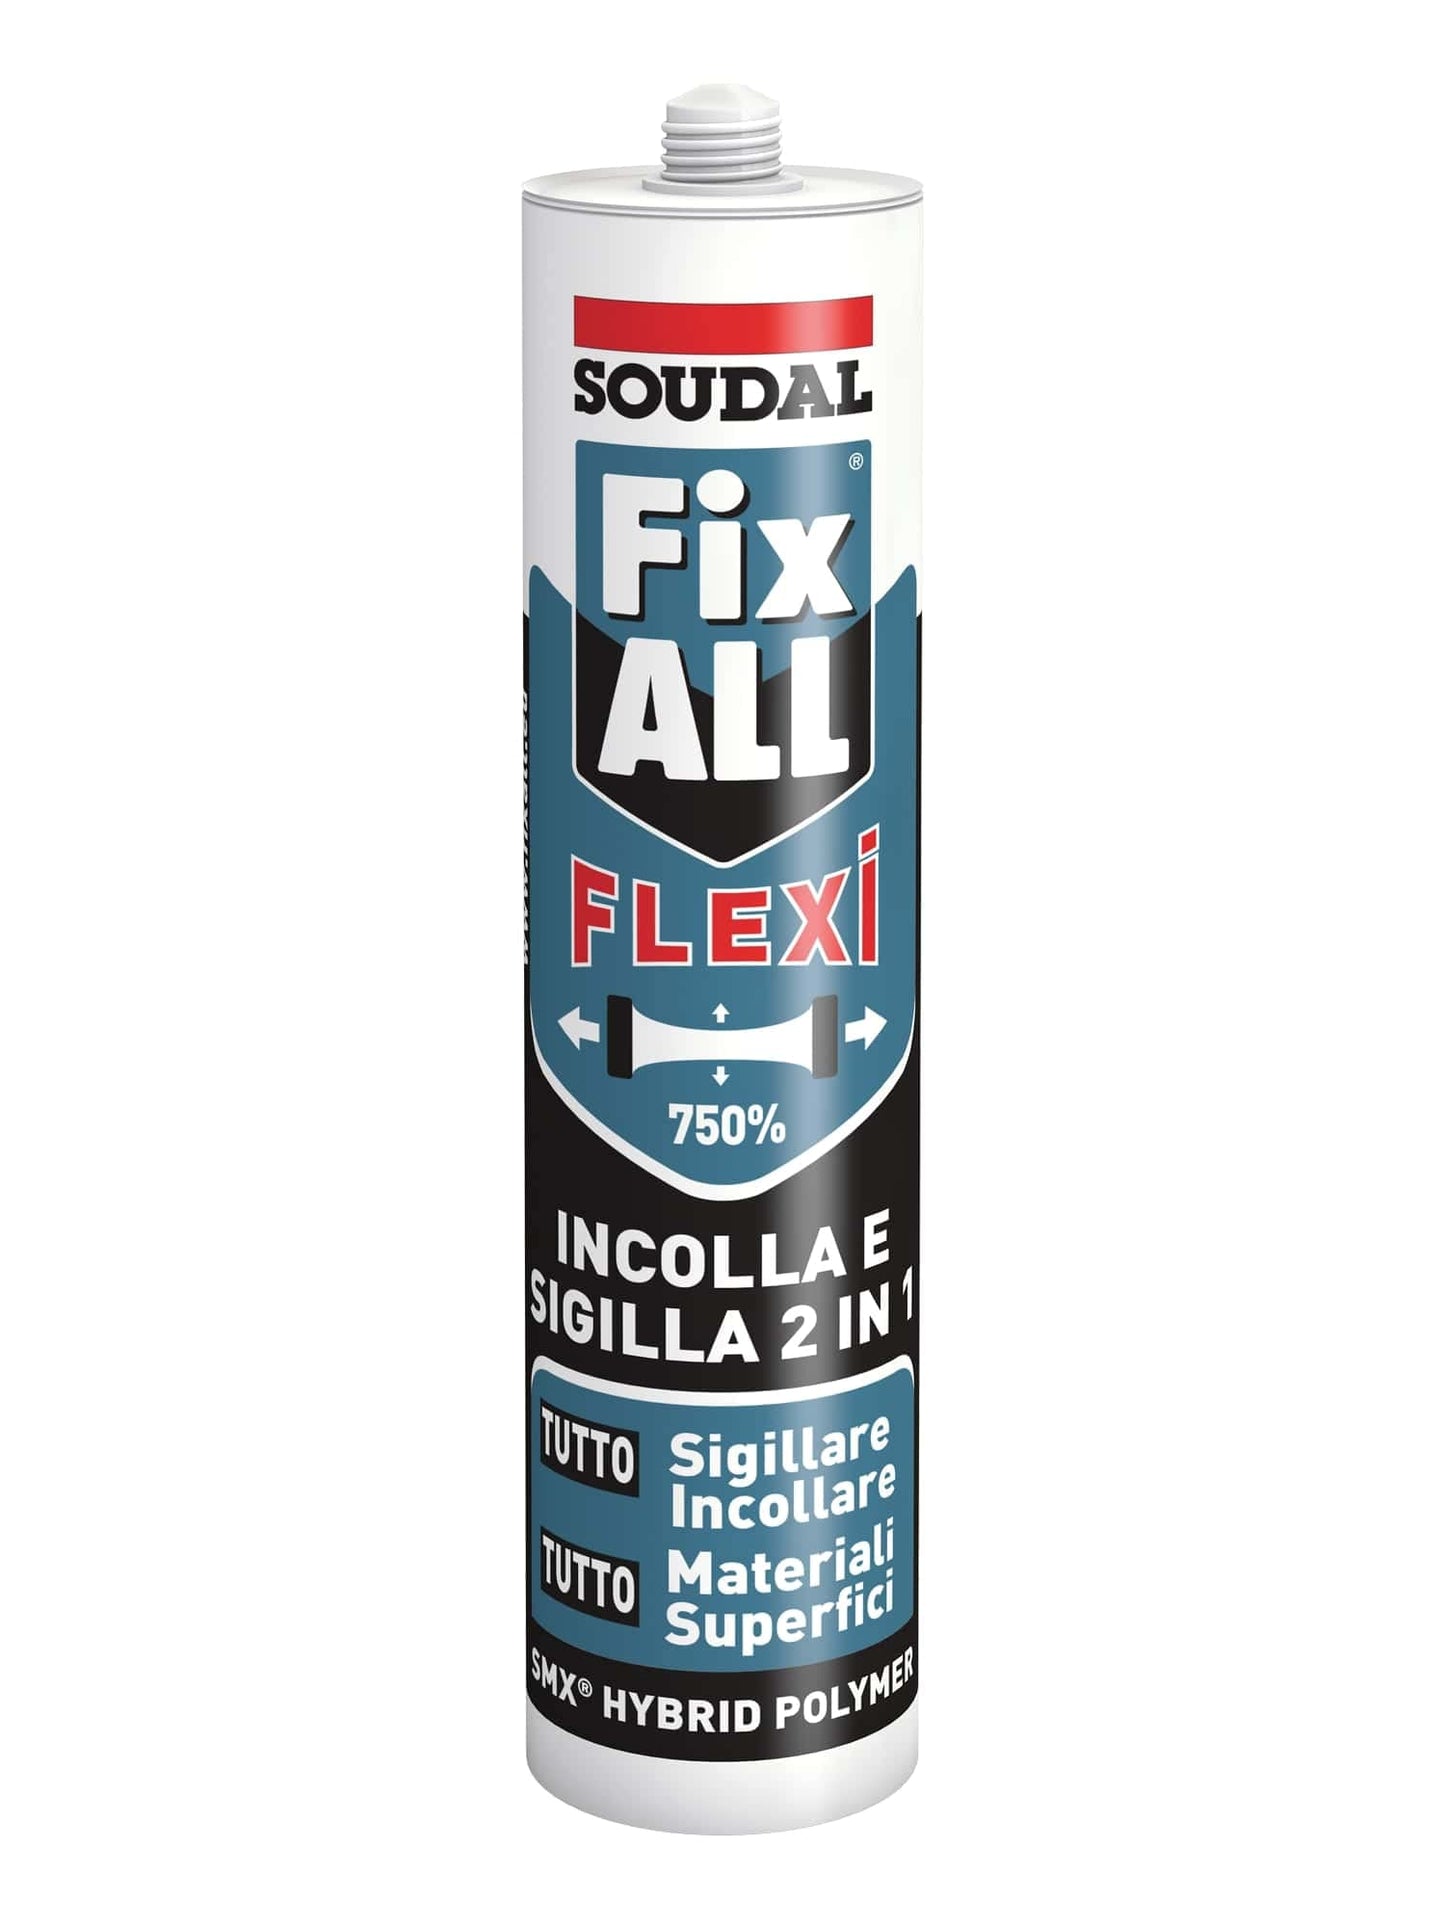 Soudal Fix ALL Flexi - Black